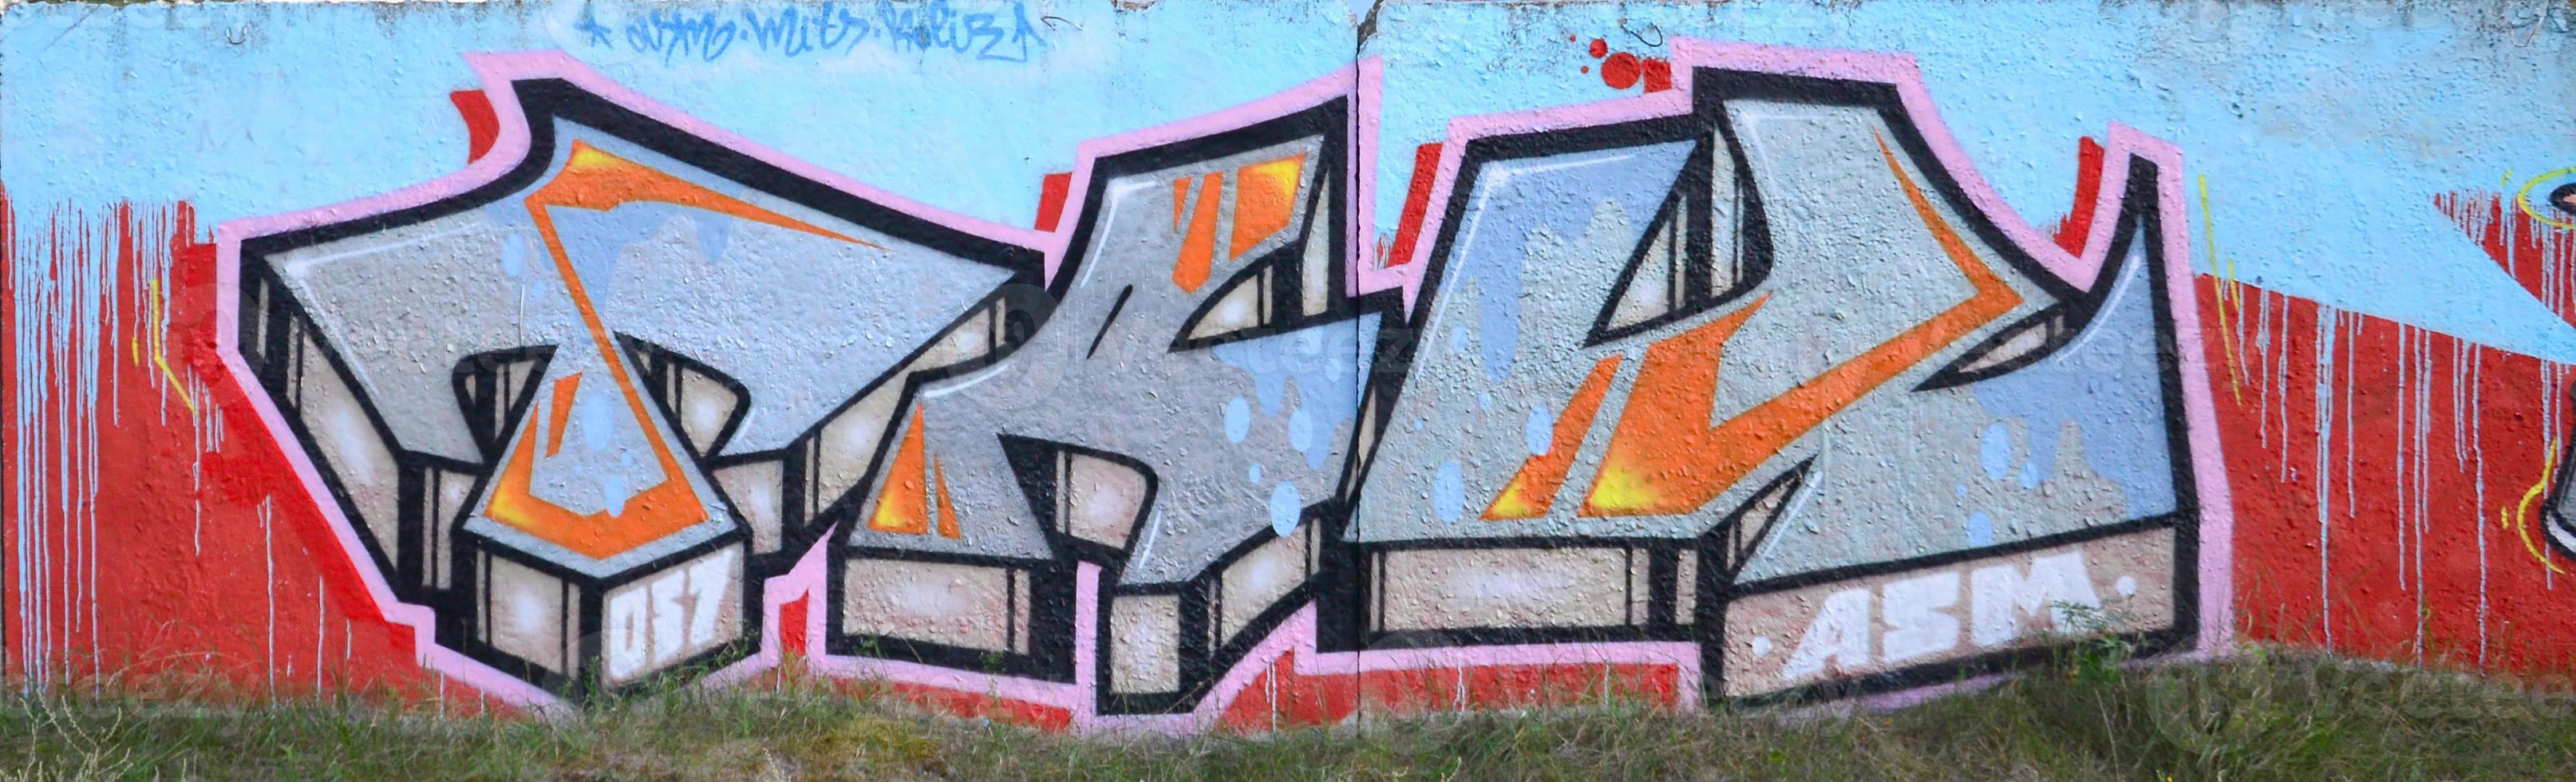 vollständiges und vollendetes Graffiti-Kunstwerk. Die alte Wand ist mit Farbflecken im Stil der Straßenkunstkultur dekoriert. farbige Hintergrundtextur foto